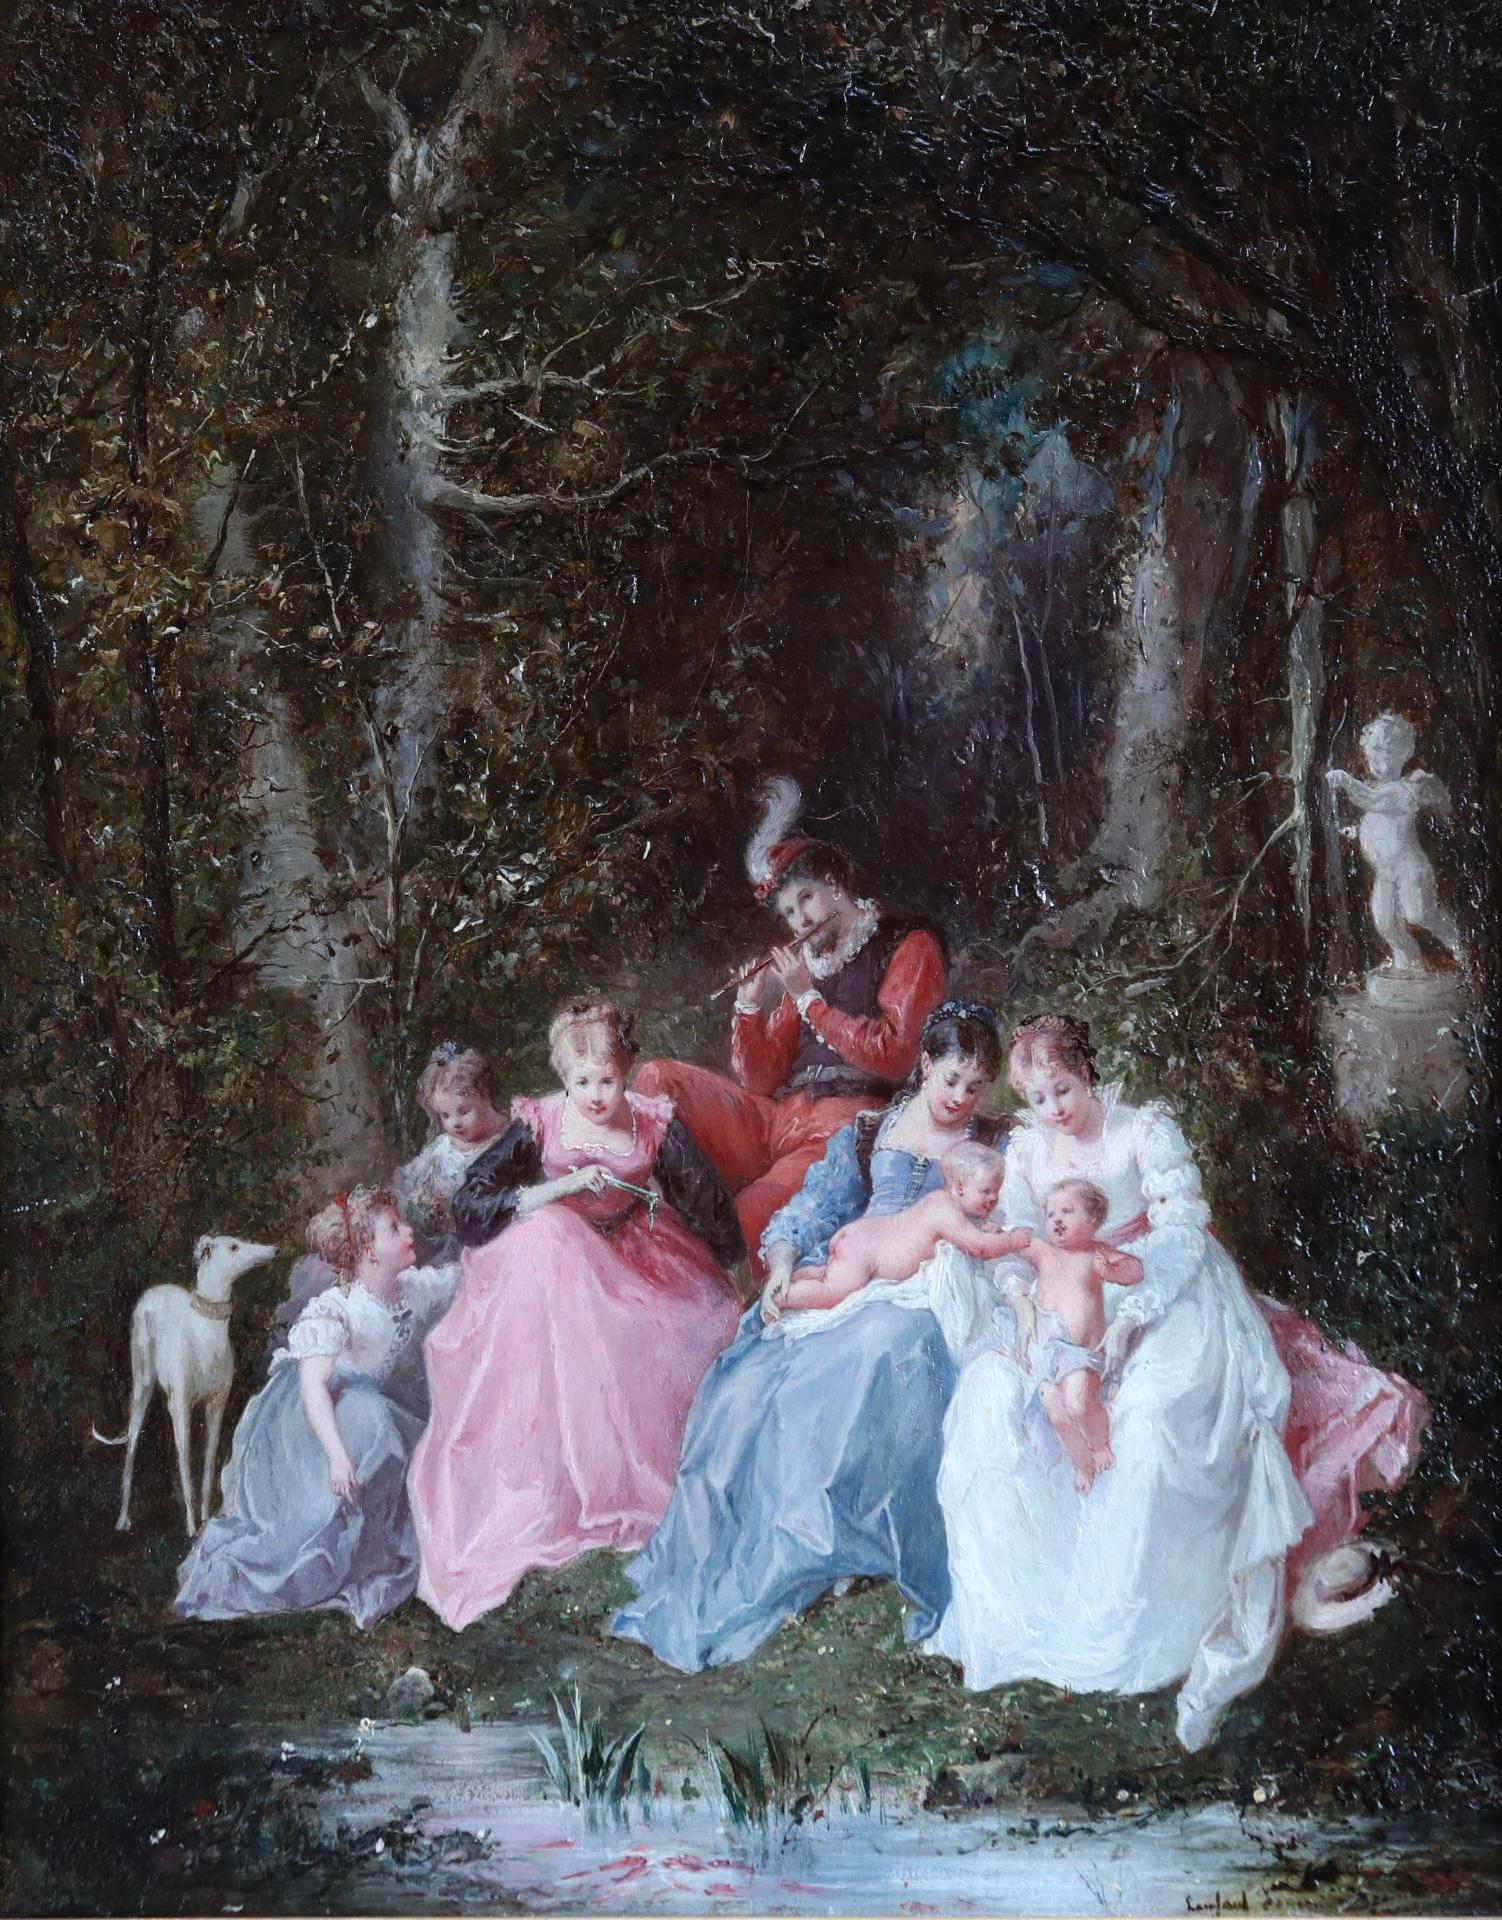 Un dimanche en forêt - 19th Century Oil, Figures in a Forest by Lanfant de Metz - Painting by Francois Louis Lanfant de Metz